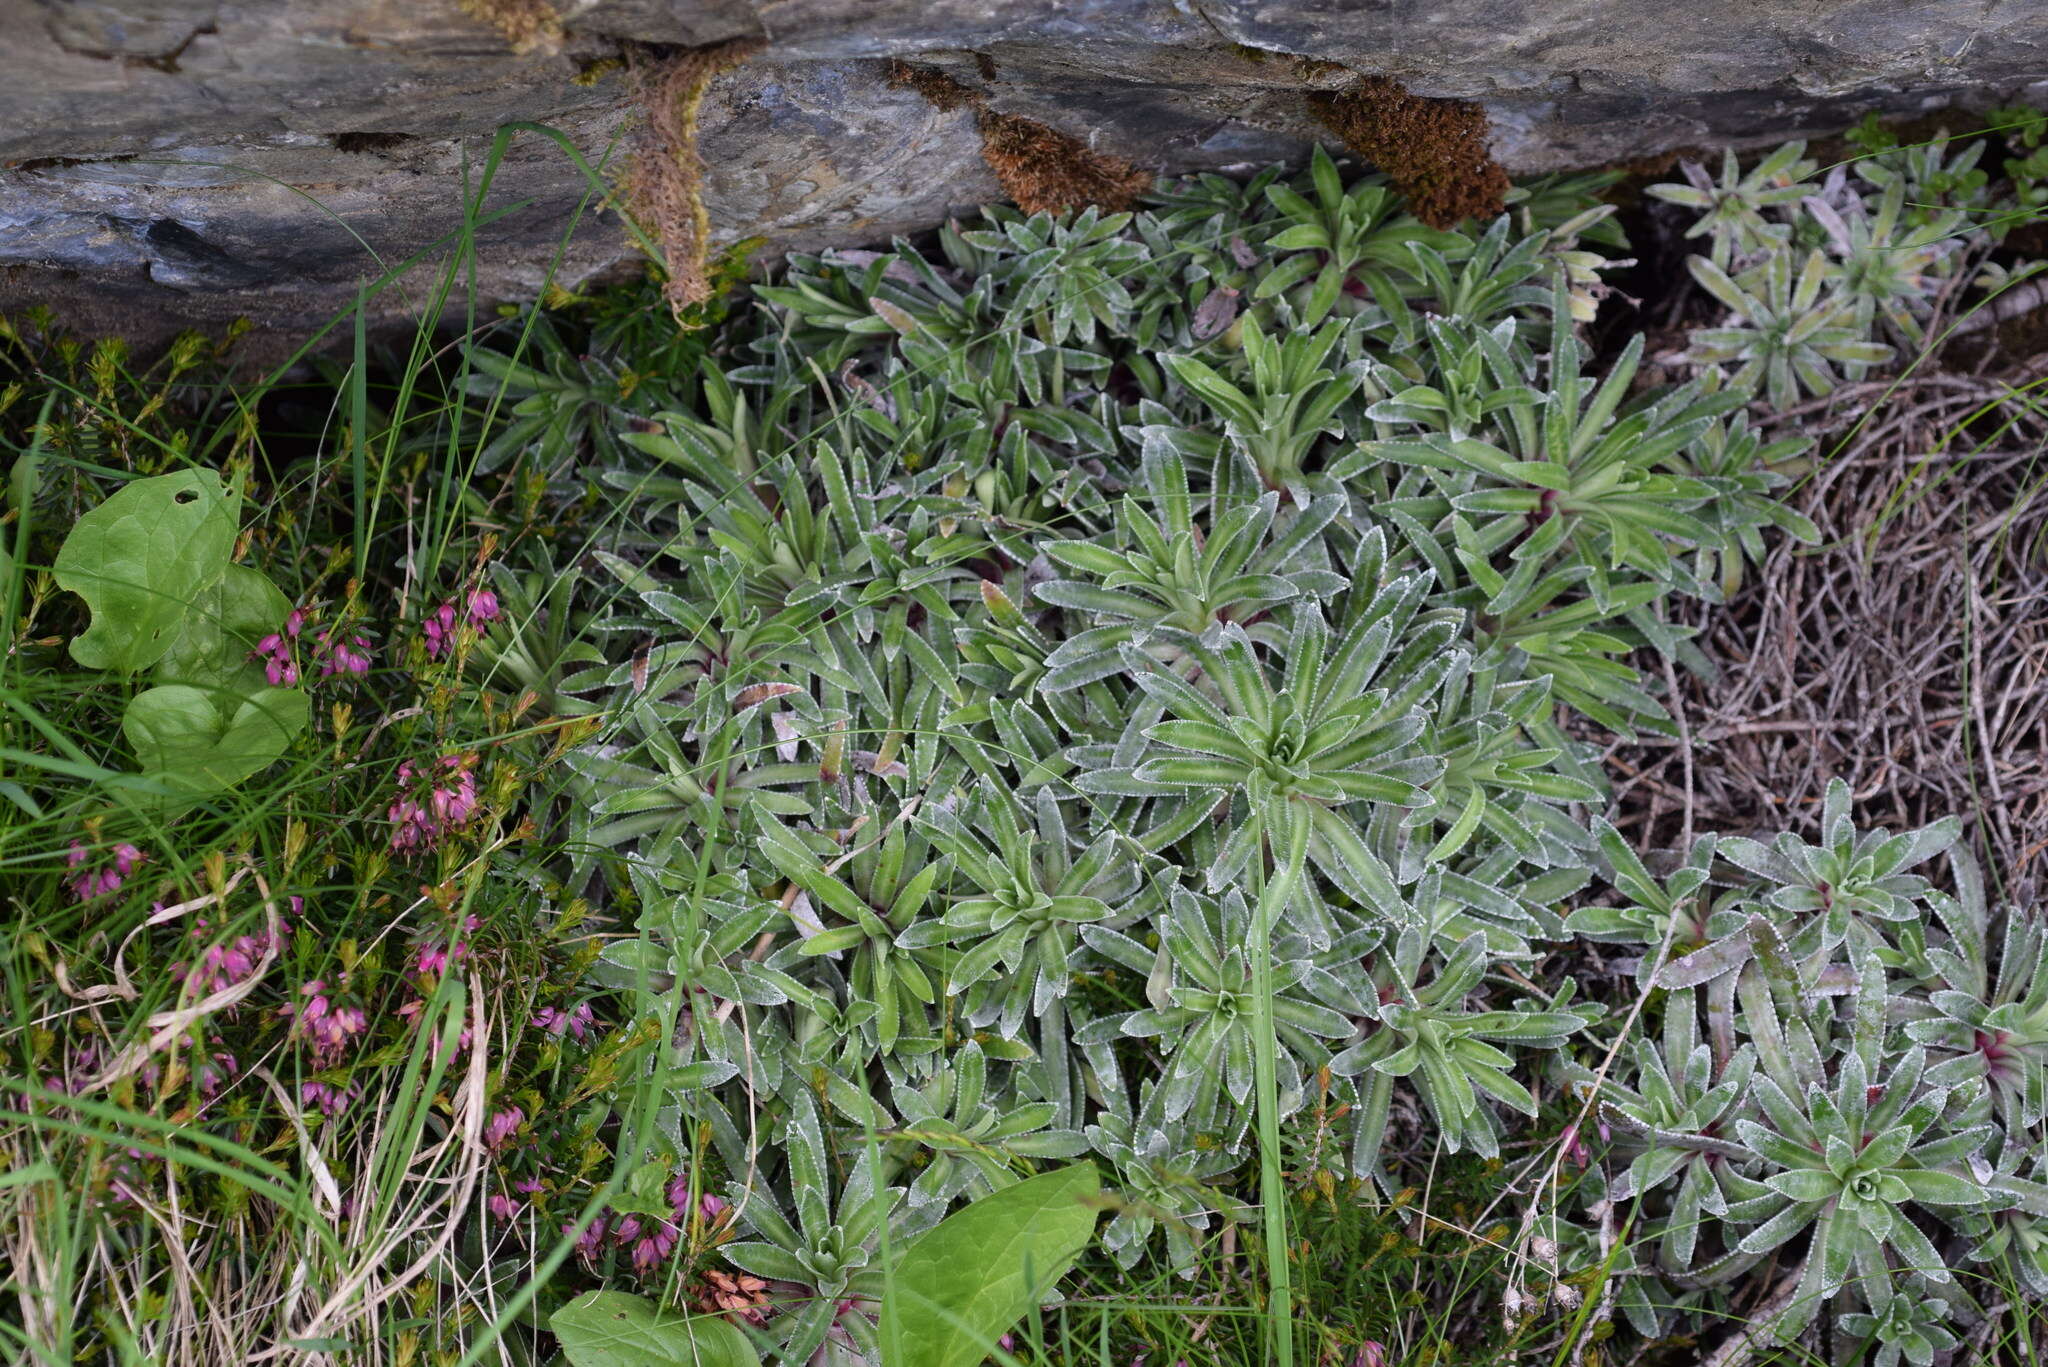 Image of Saxifraga hostii subsp. rhaetica (Kerner) Br.-Bl.